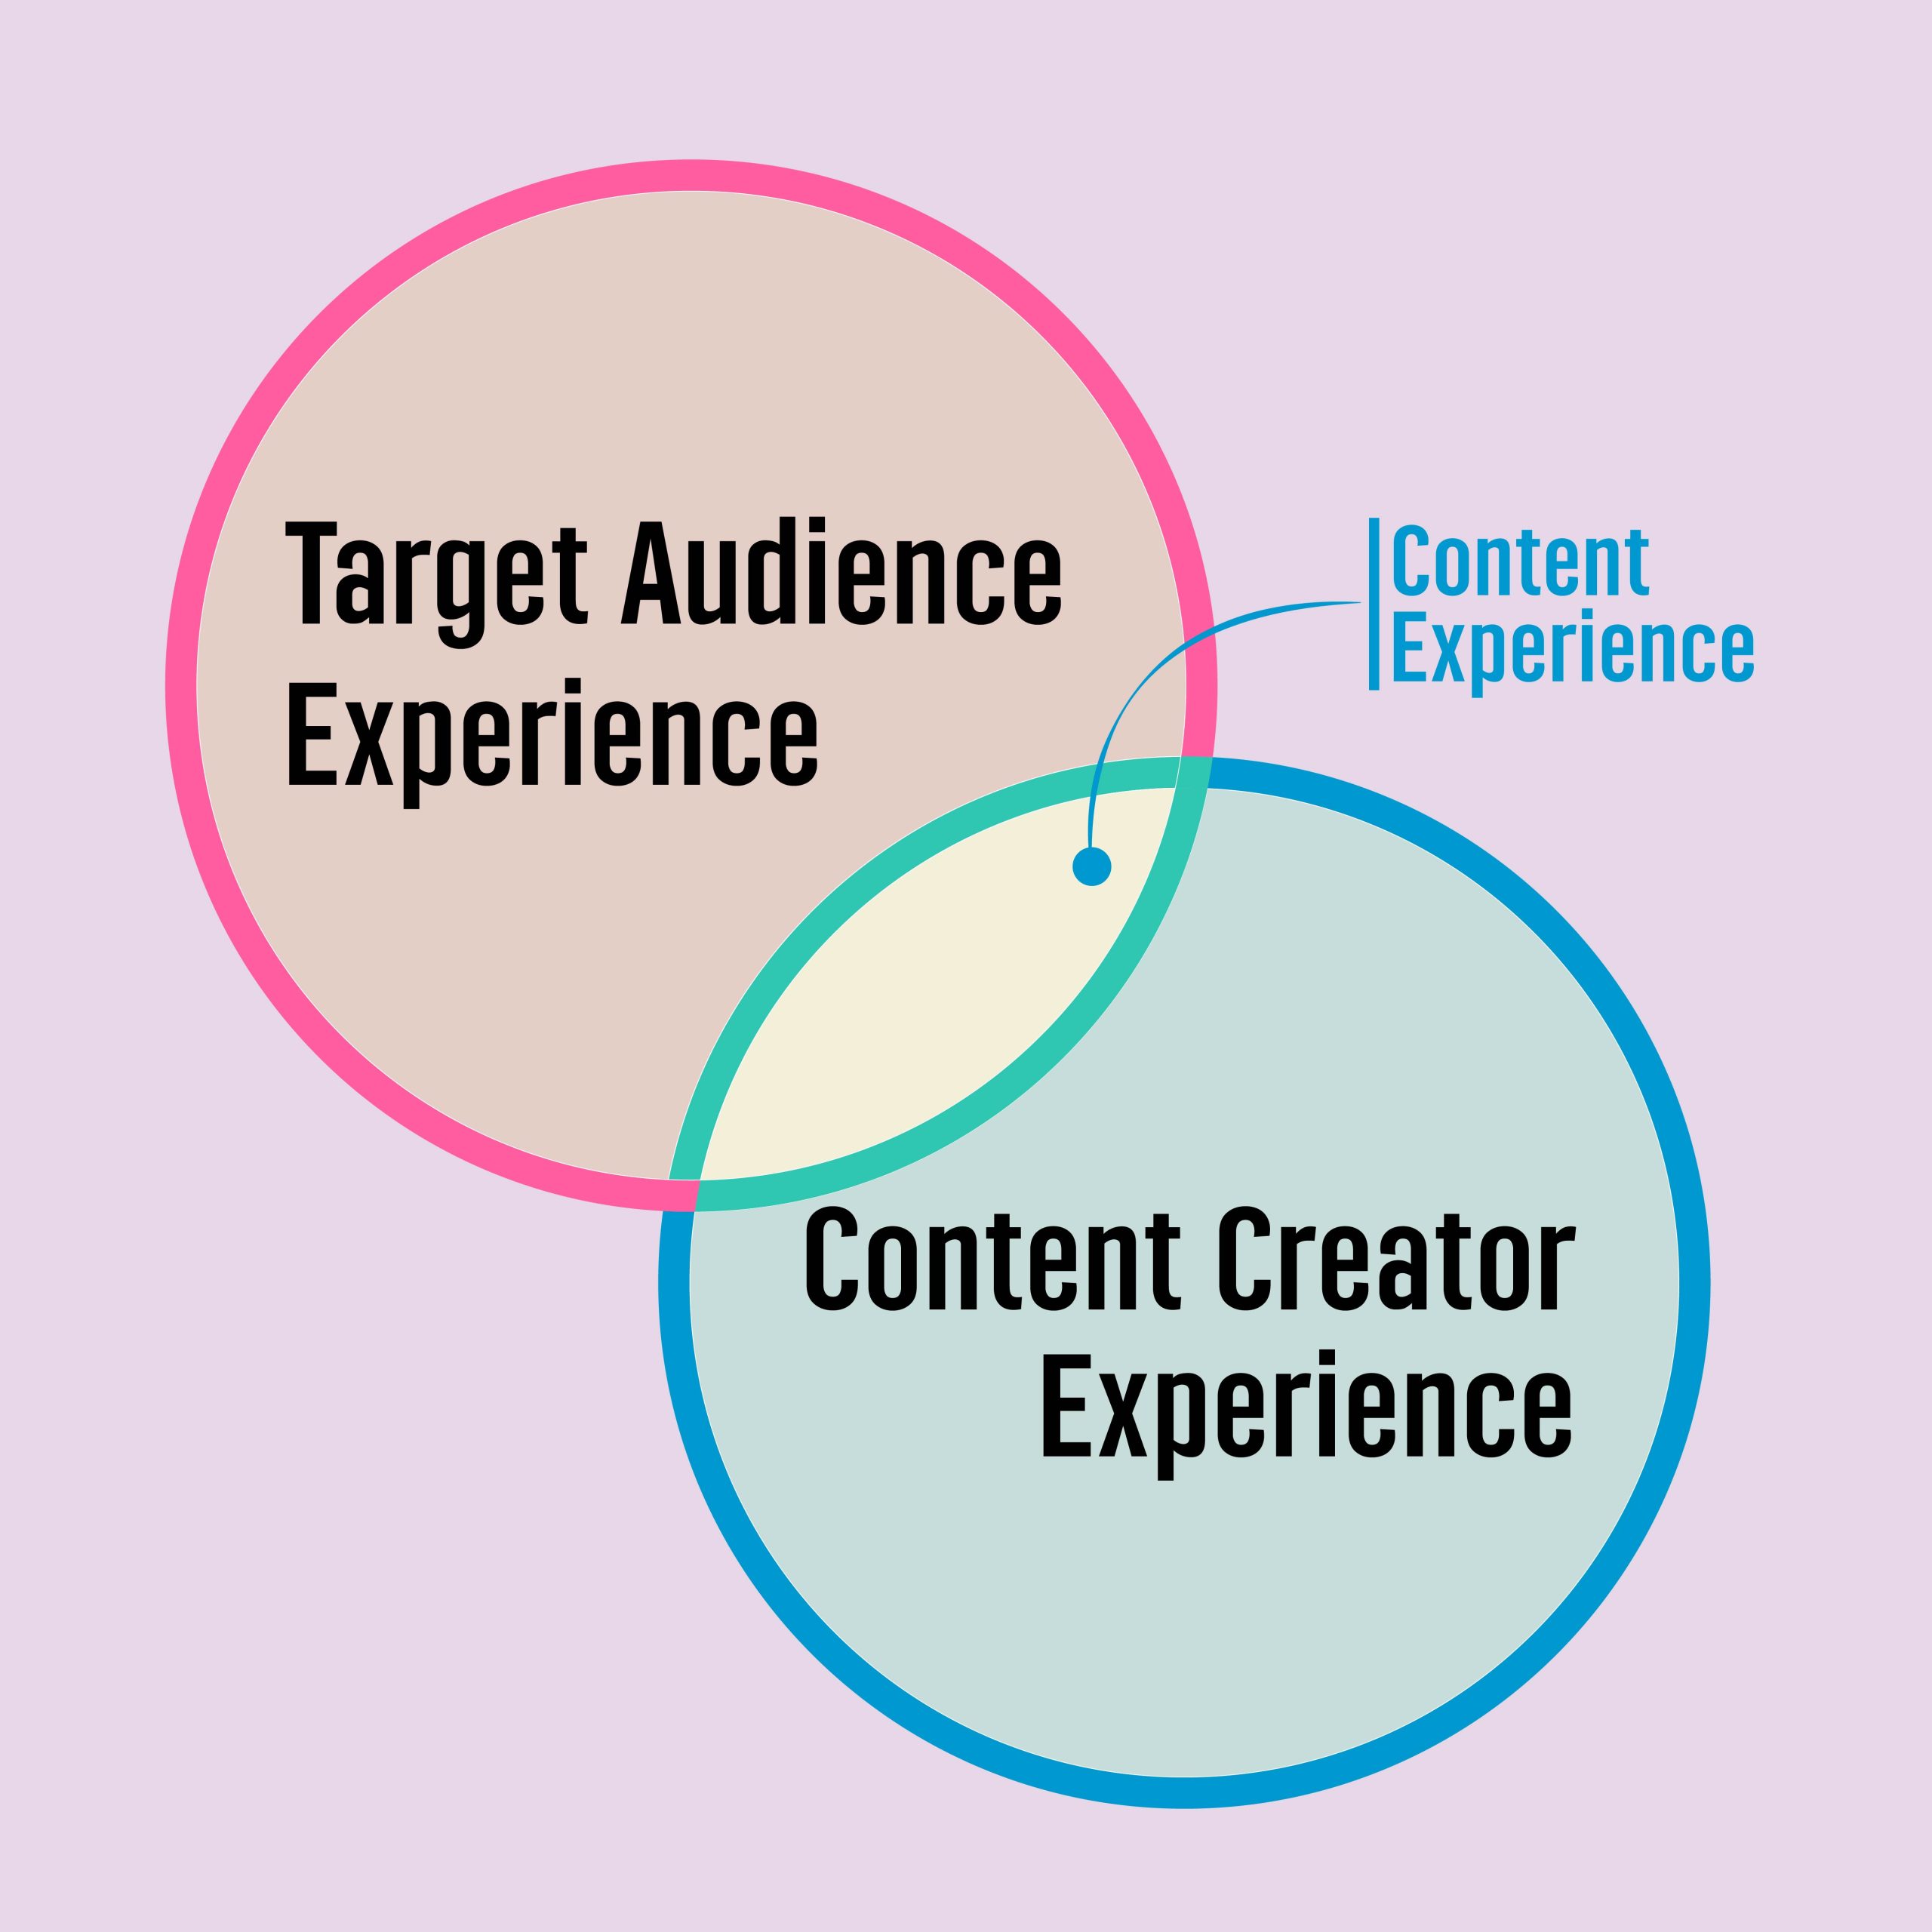 Content Experience : ประสบการณ์คอนเทนต์ที่นักสร้างสรรค์คอนเทนต์ควรรู้